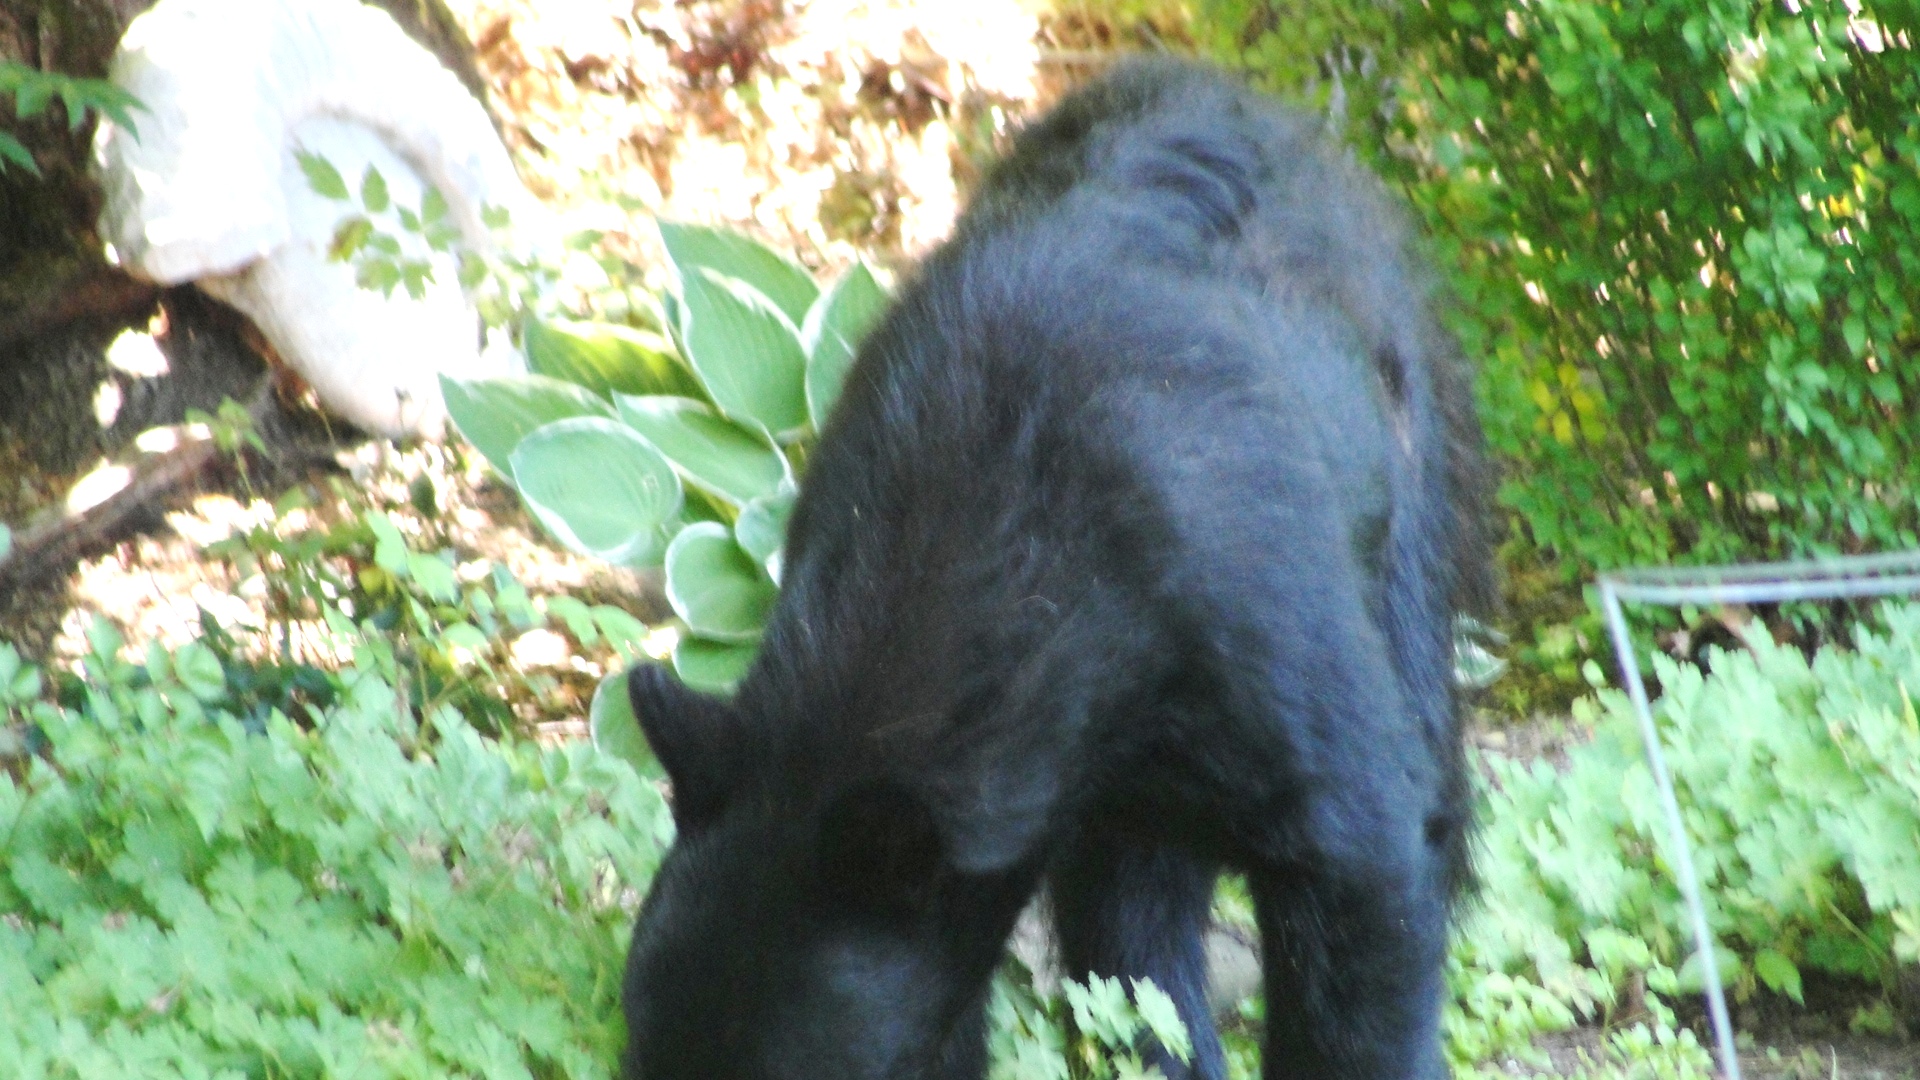 MY BACKYARD BLACK BEAR. 2